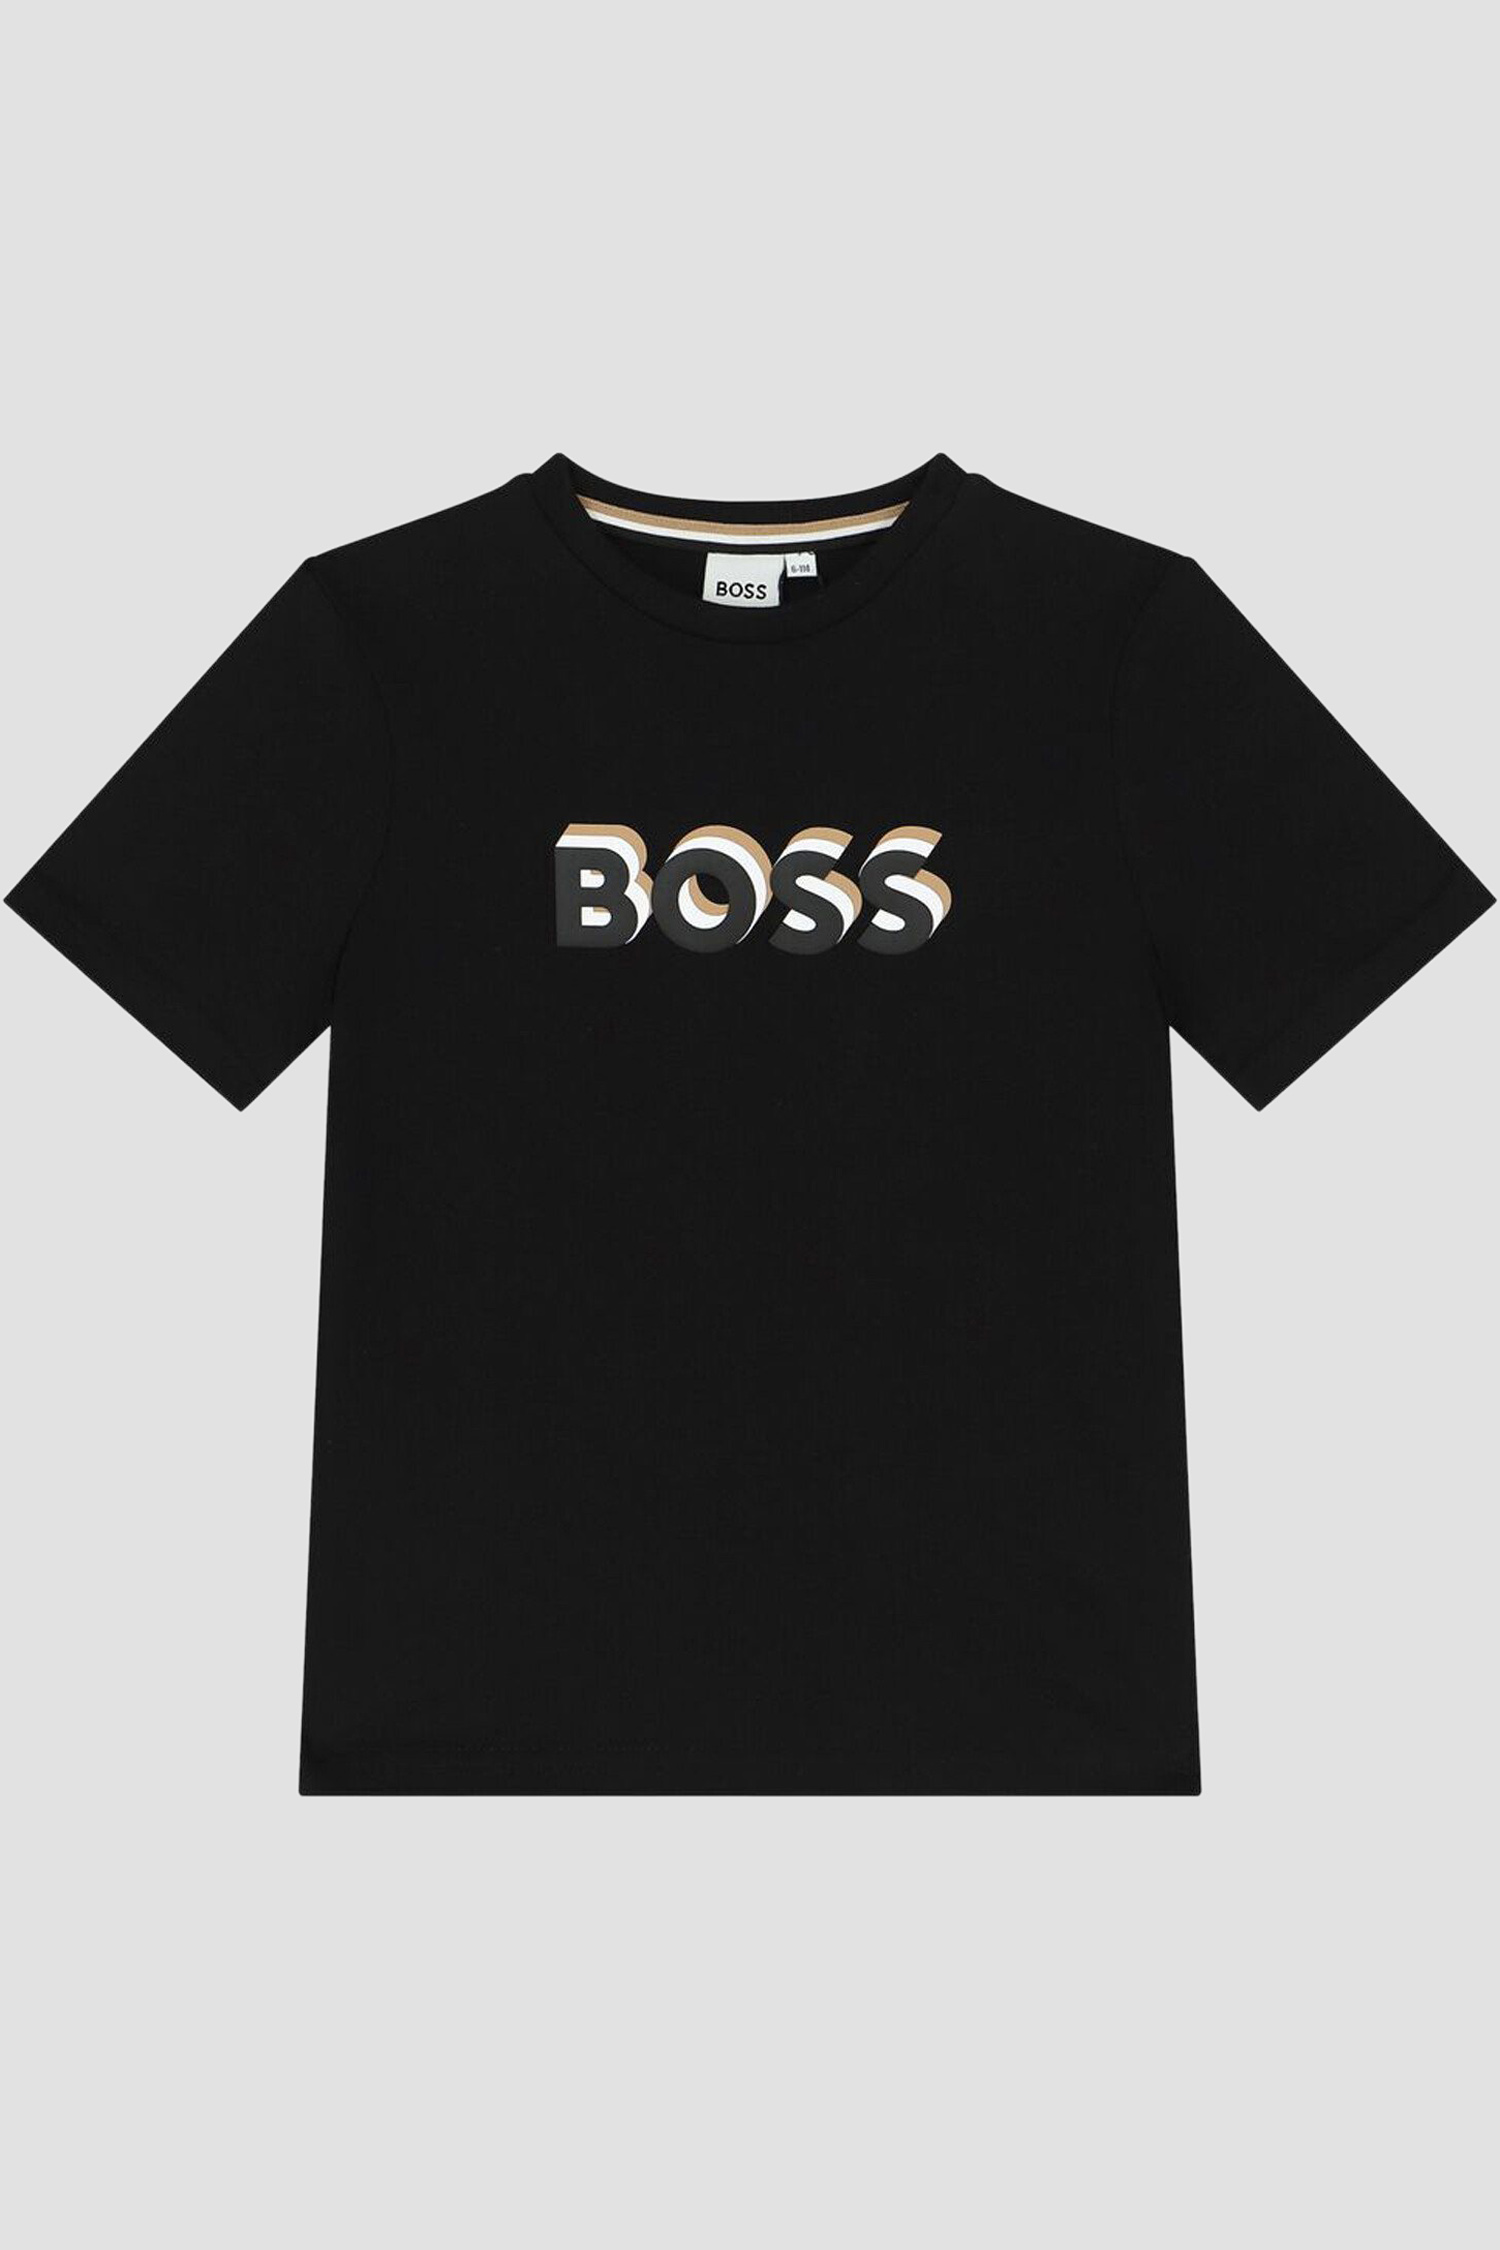 Дитяча чорна футболка BOSS kids J50723;09B